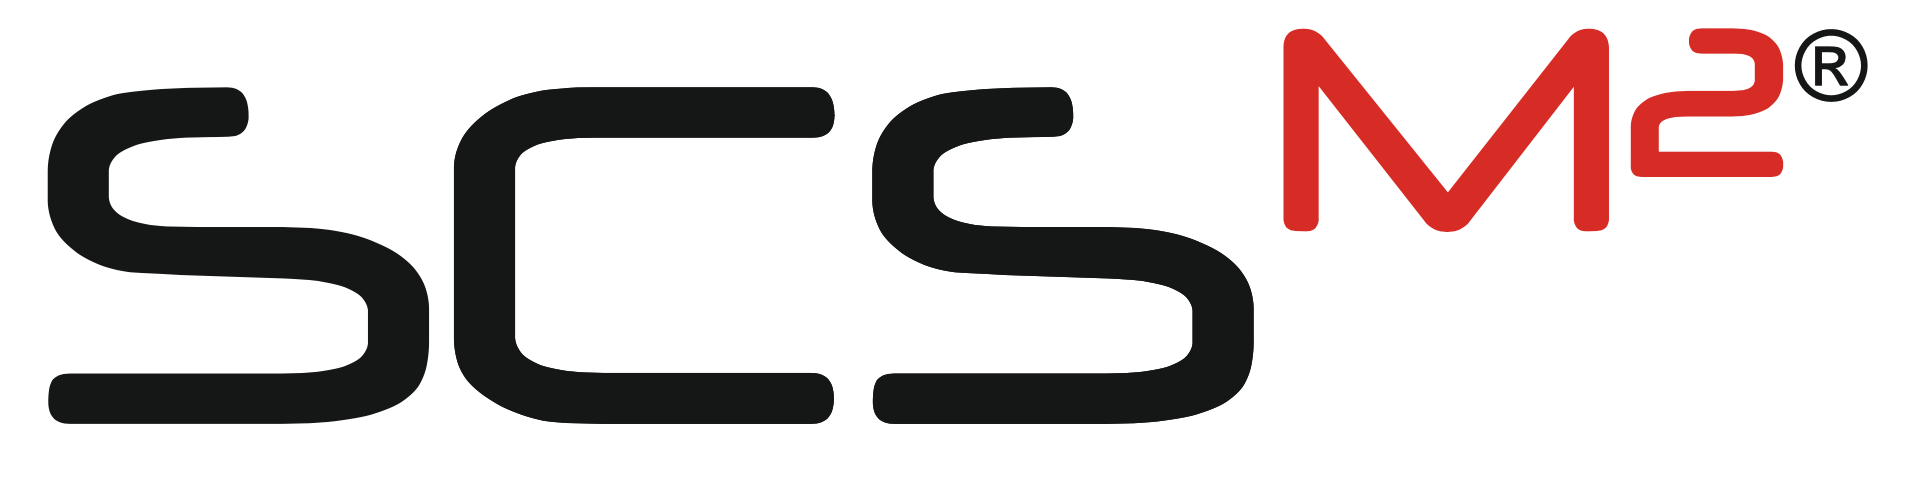 SCSM2 R Logo schwarz